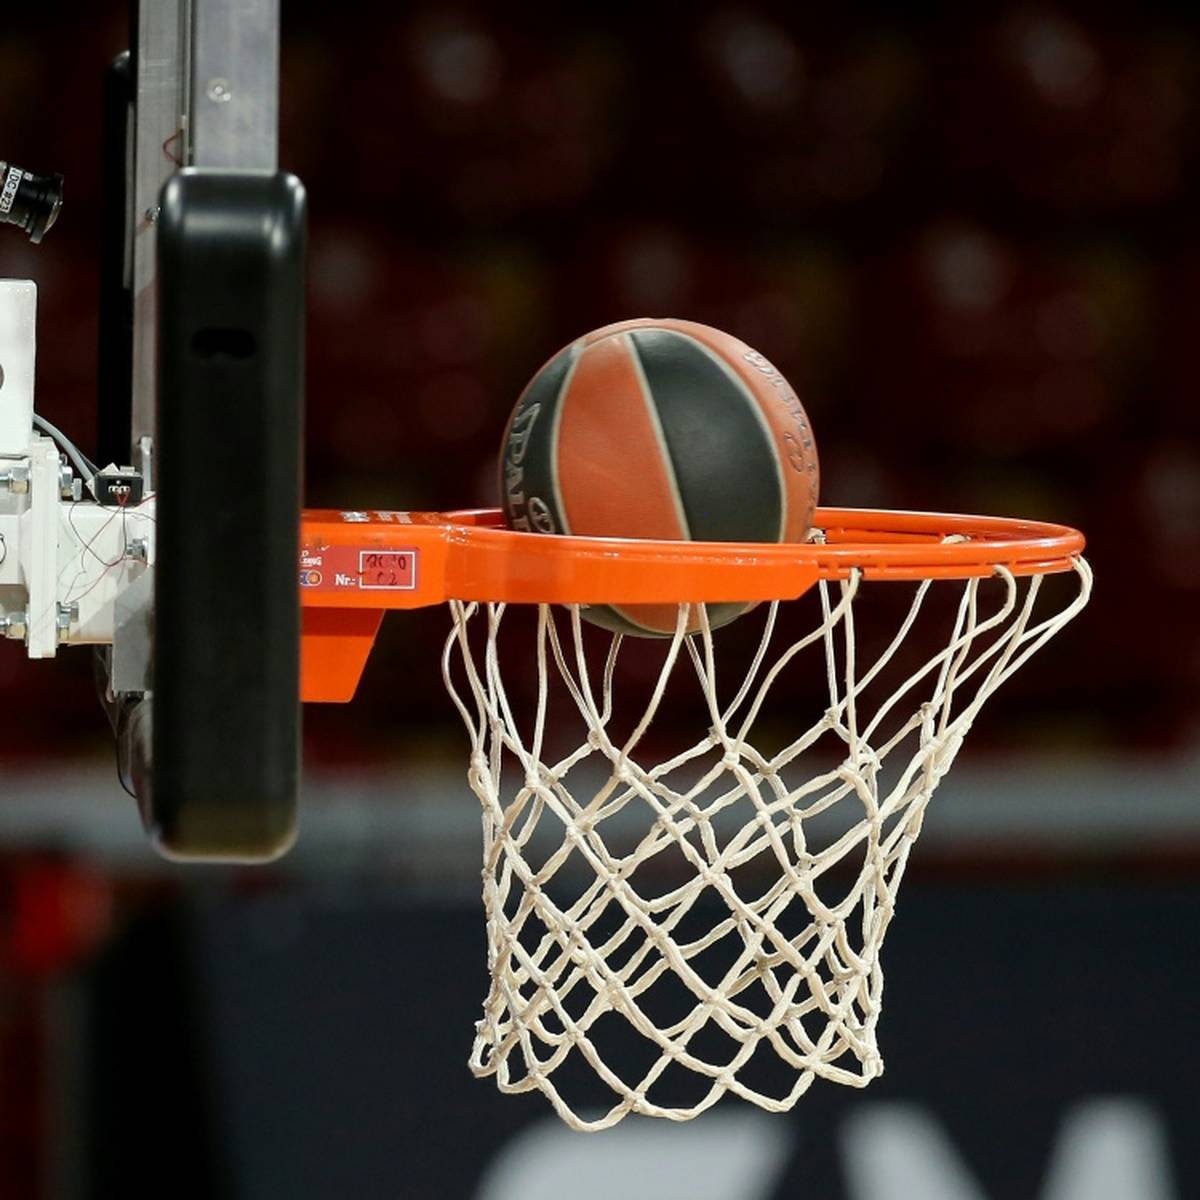 Der deutsche Basketball-Schiedsrichter Benjamin Barth ist nach dem Streit um seinen Bart für die kommende EuroLeague-Saison gestrichen worden.